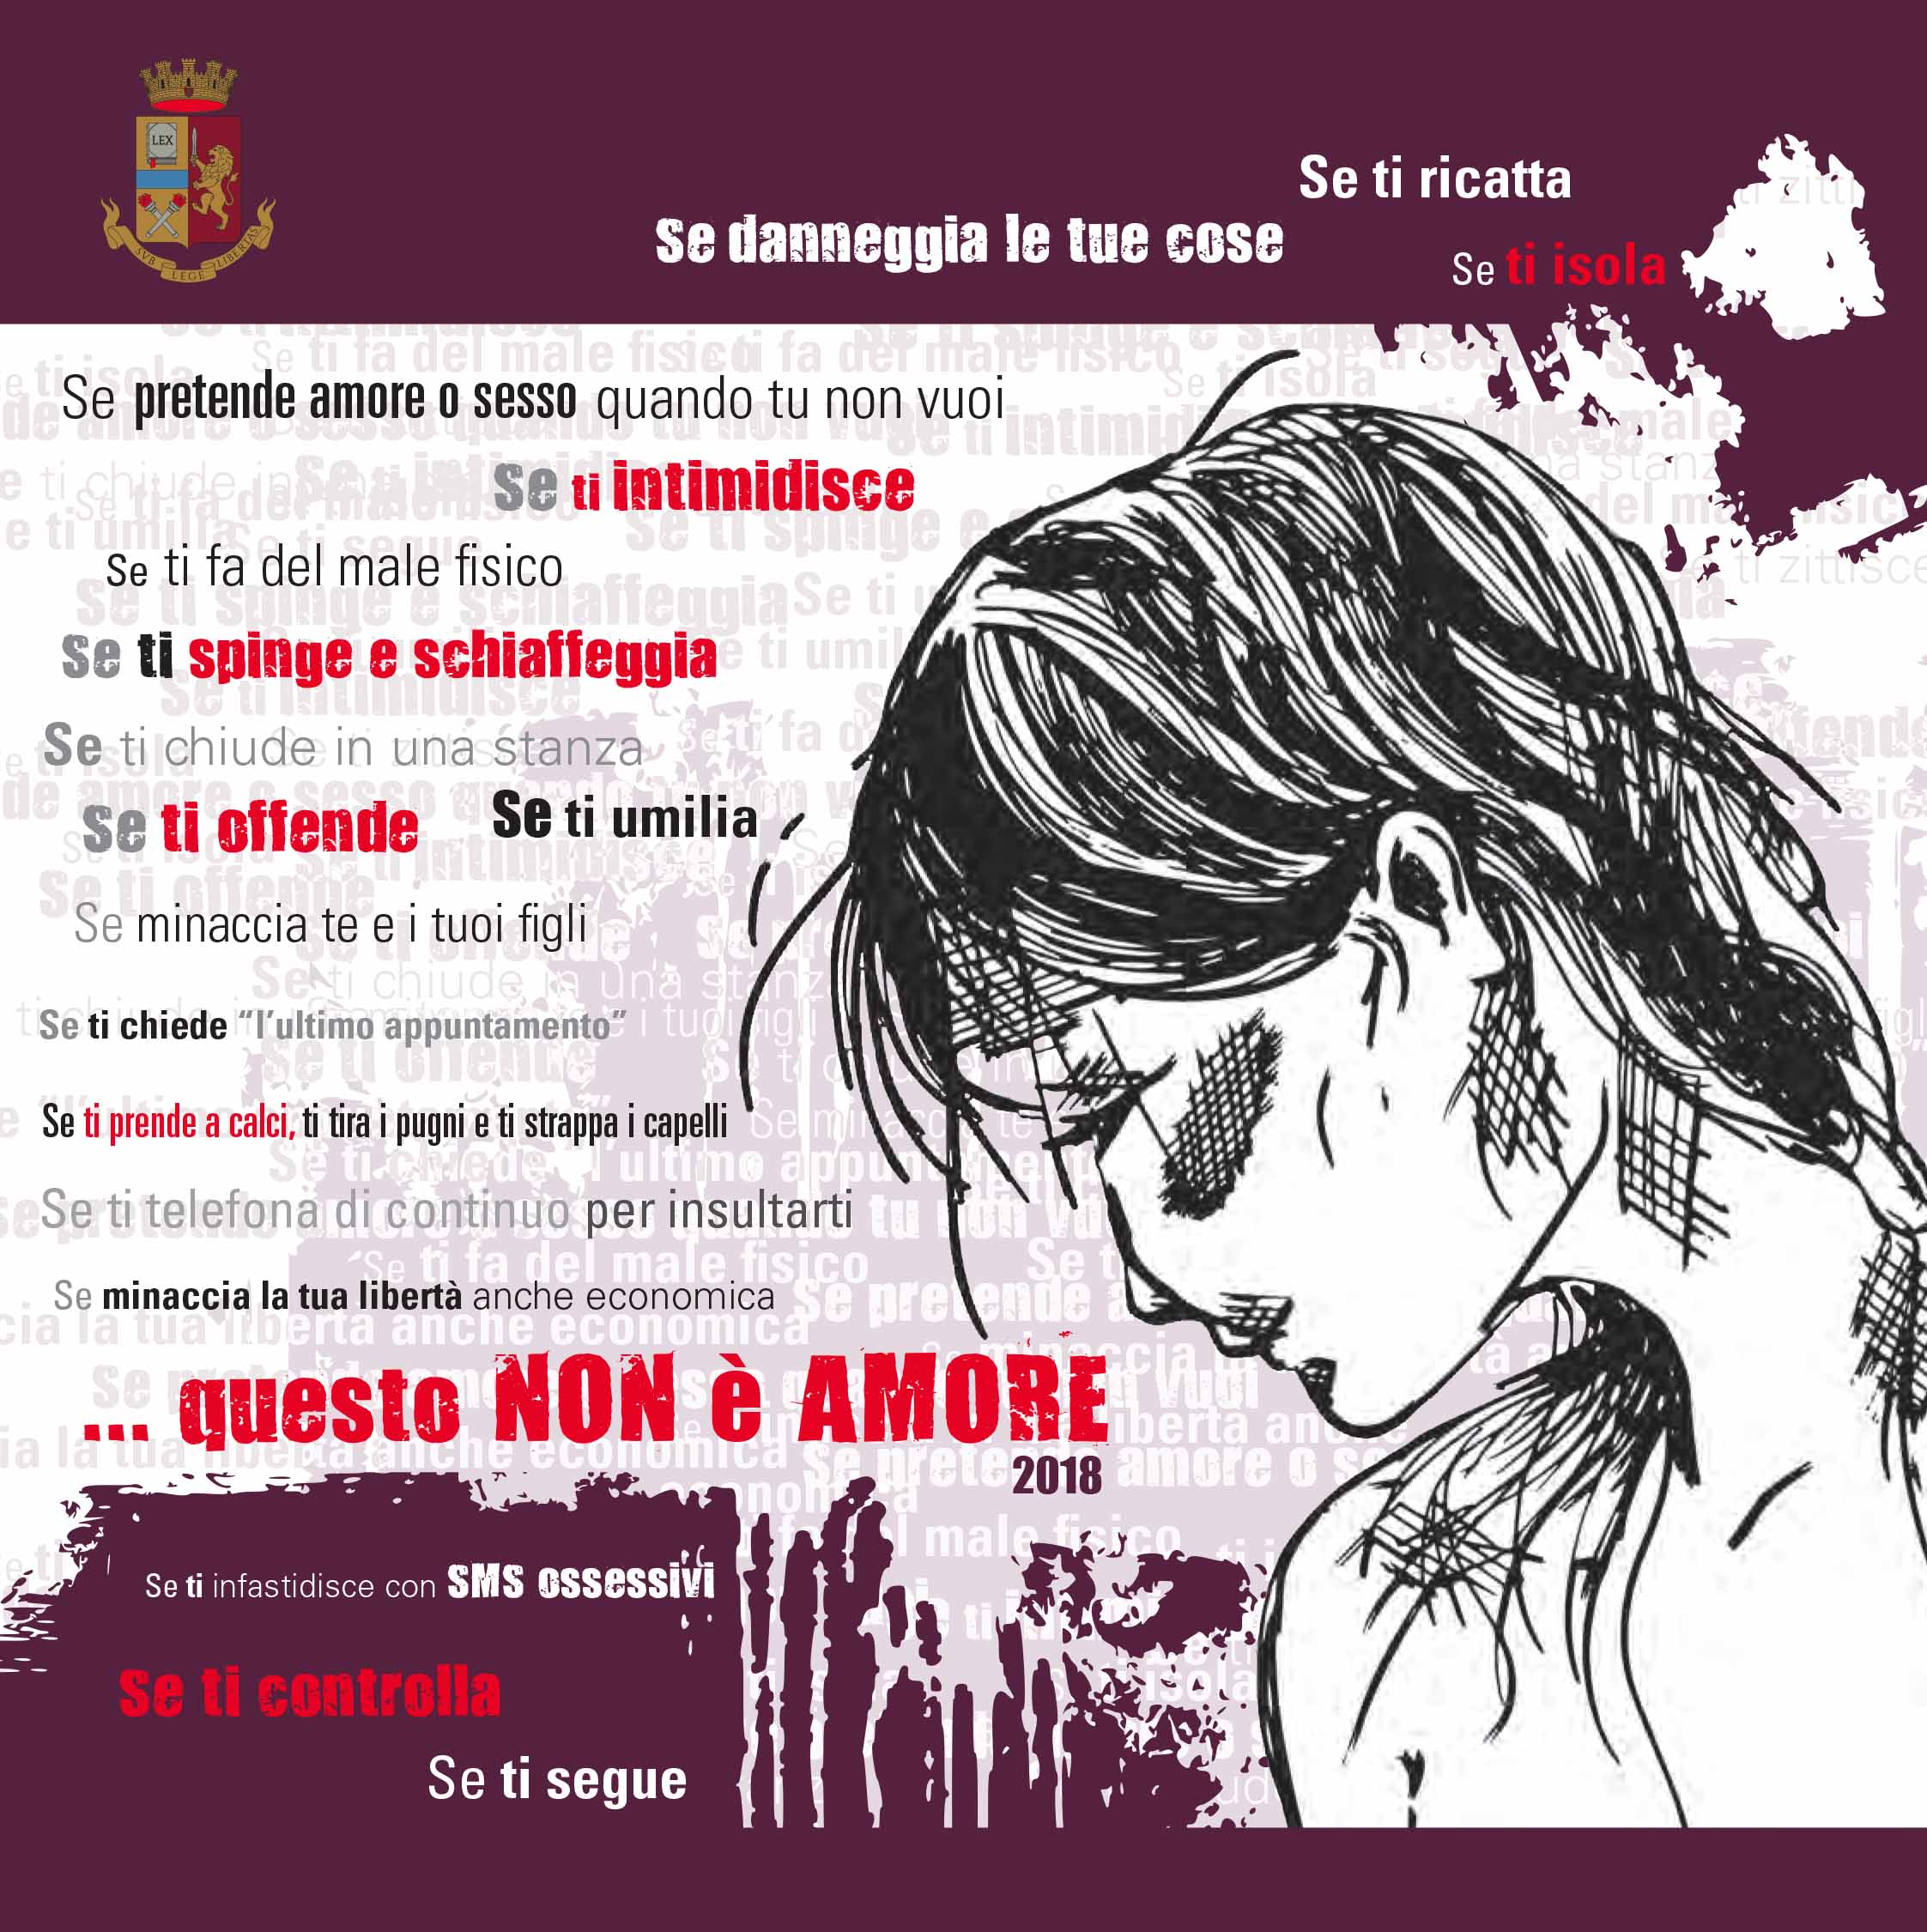 “Questo non è amore”: la Questura di Messina ritorna con la sua campagna di sensibilizzazione contro la violenza sulle donne